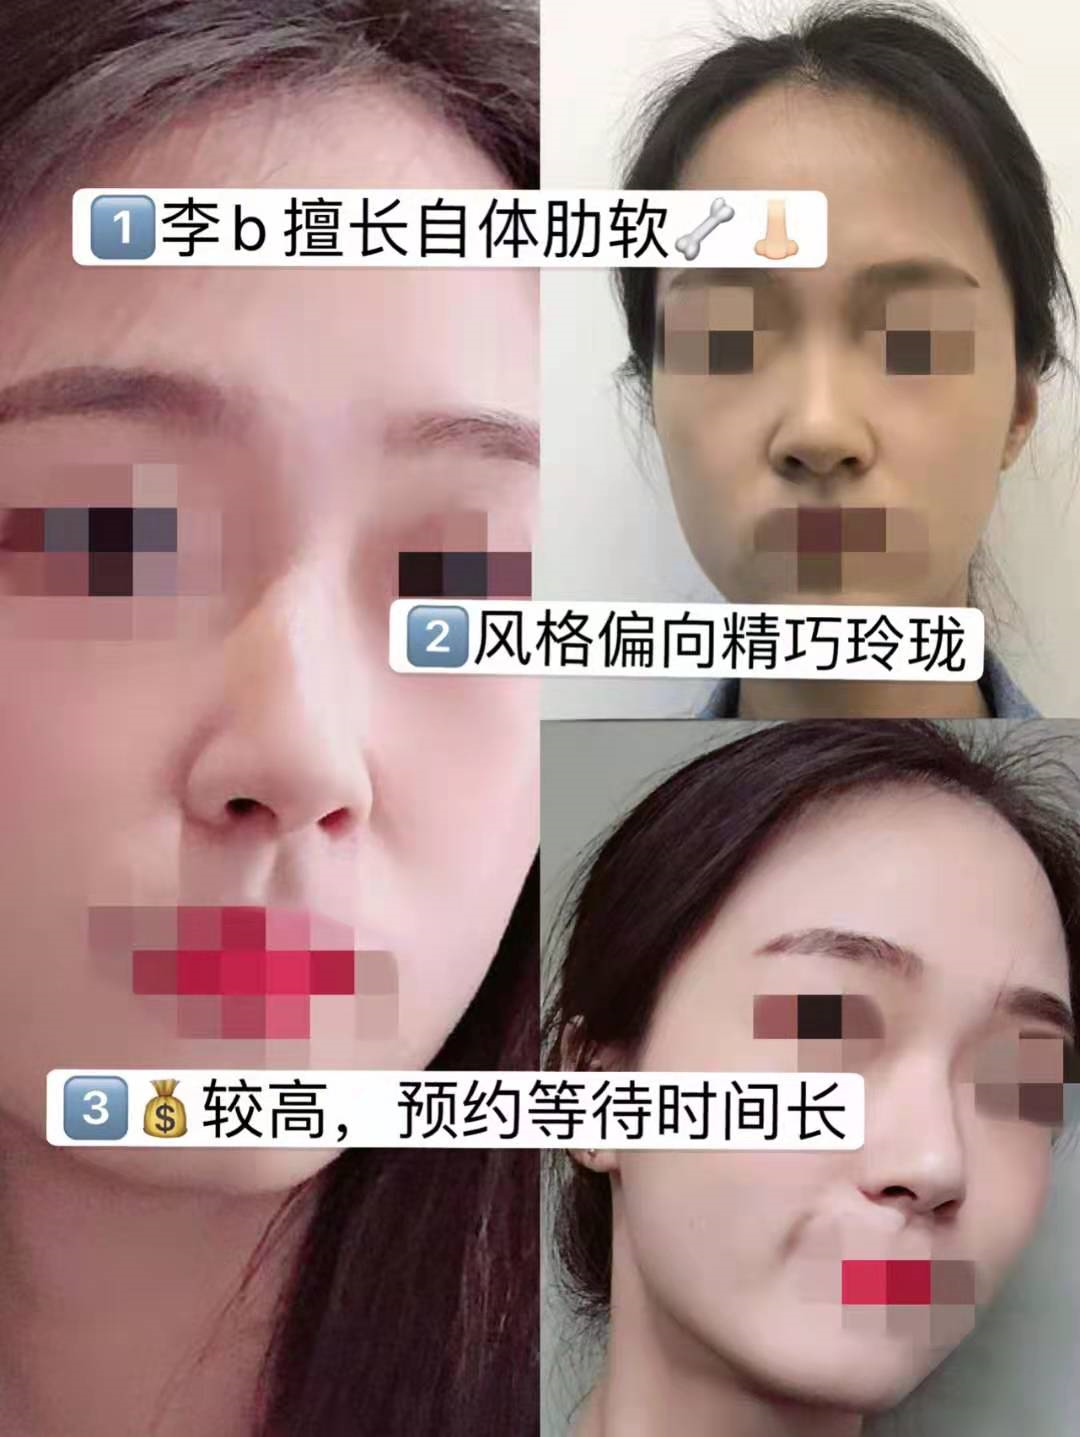 上海九院隆鼻哪个医生能做出妈生鼻？假体隆鼻&自软骨隆鼻 - 知乎